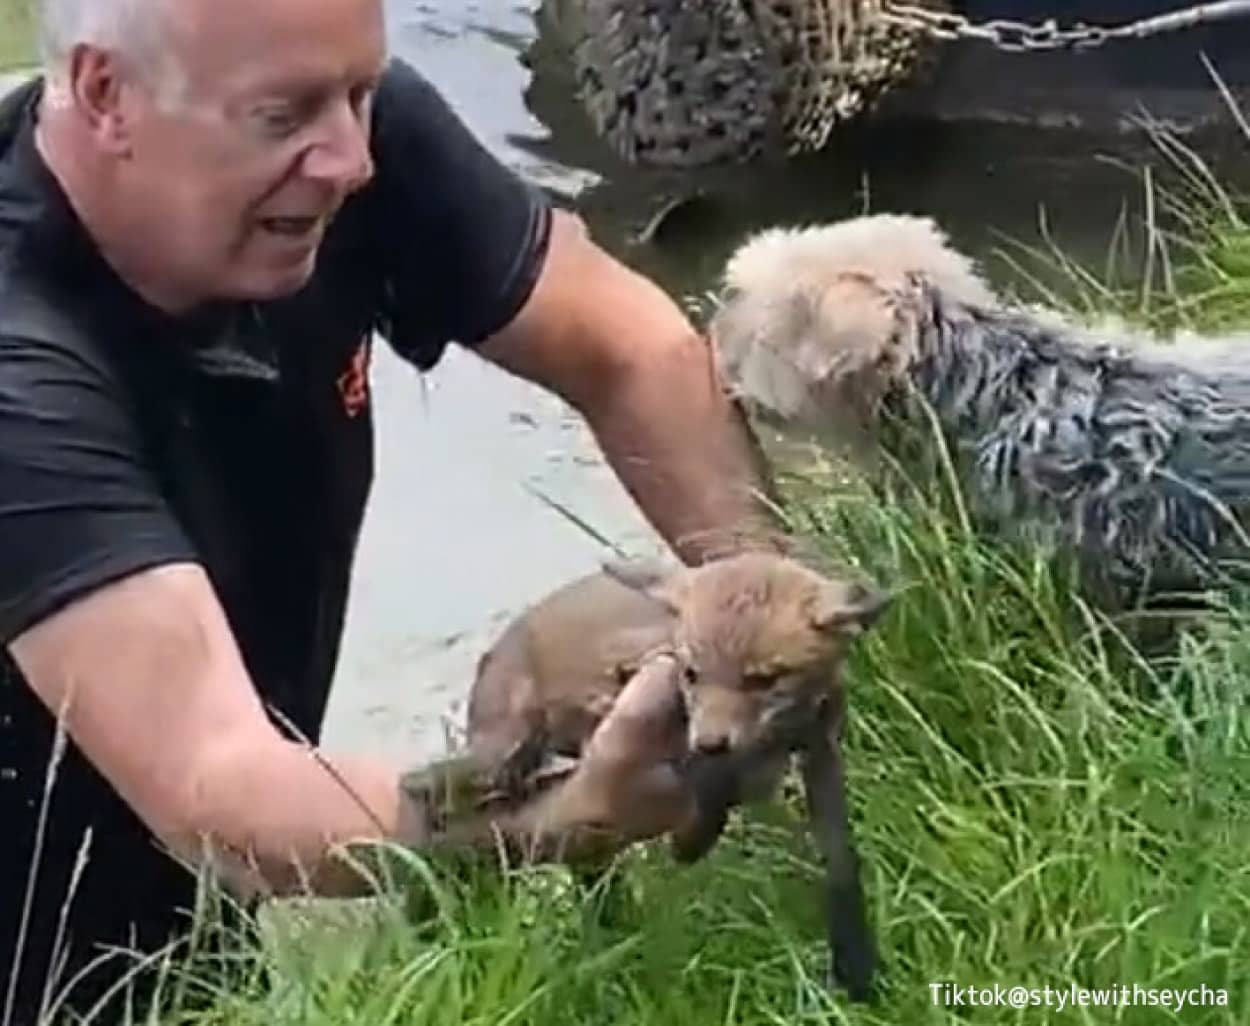 溺れているキツネの子を発見した男性、服のまま運河に飛び込み救助に成功